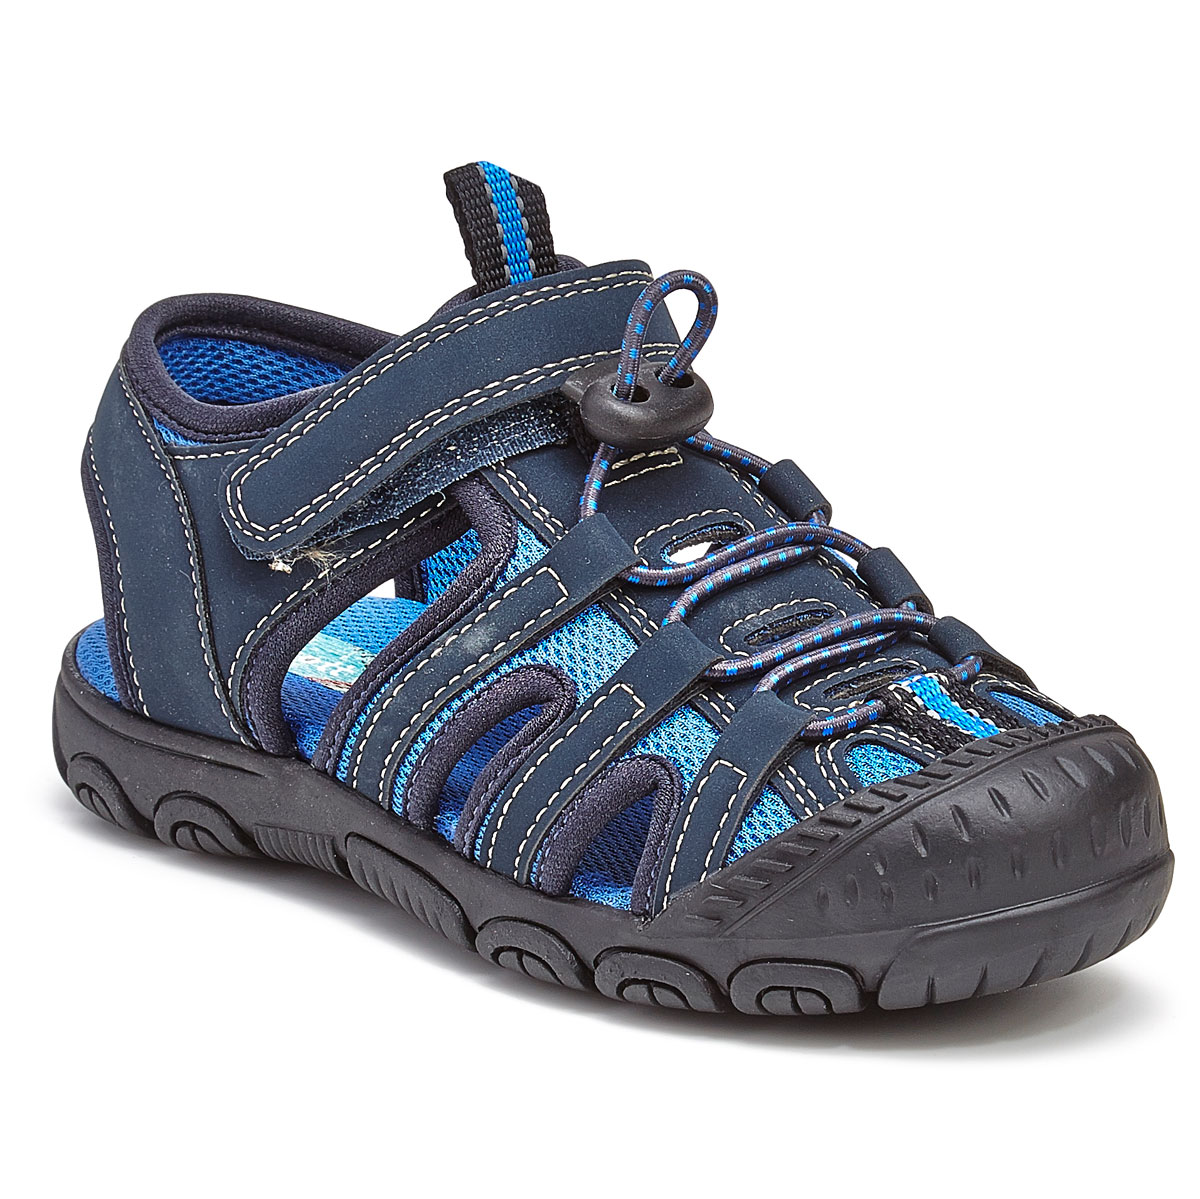 Rachel Shoes Toddler Boys' Lil' Lucas Bump Toe Sandals - Blue, 6